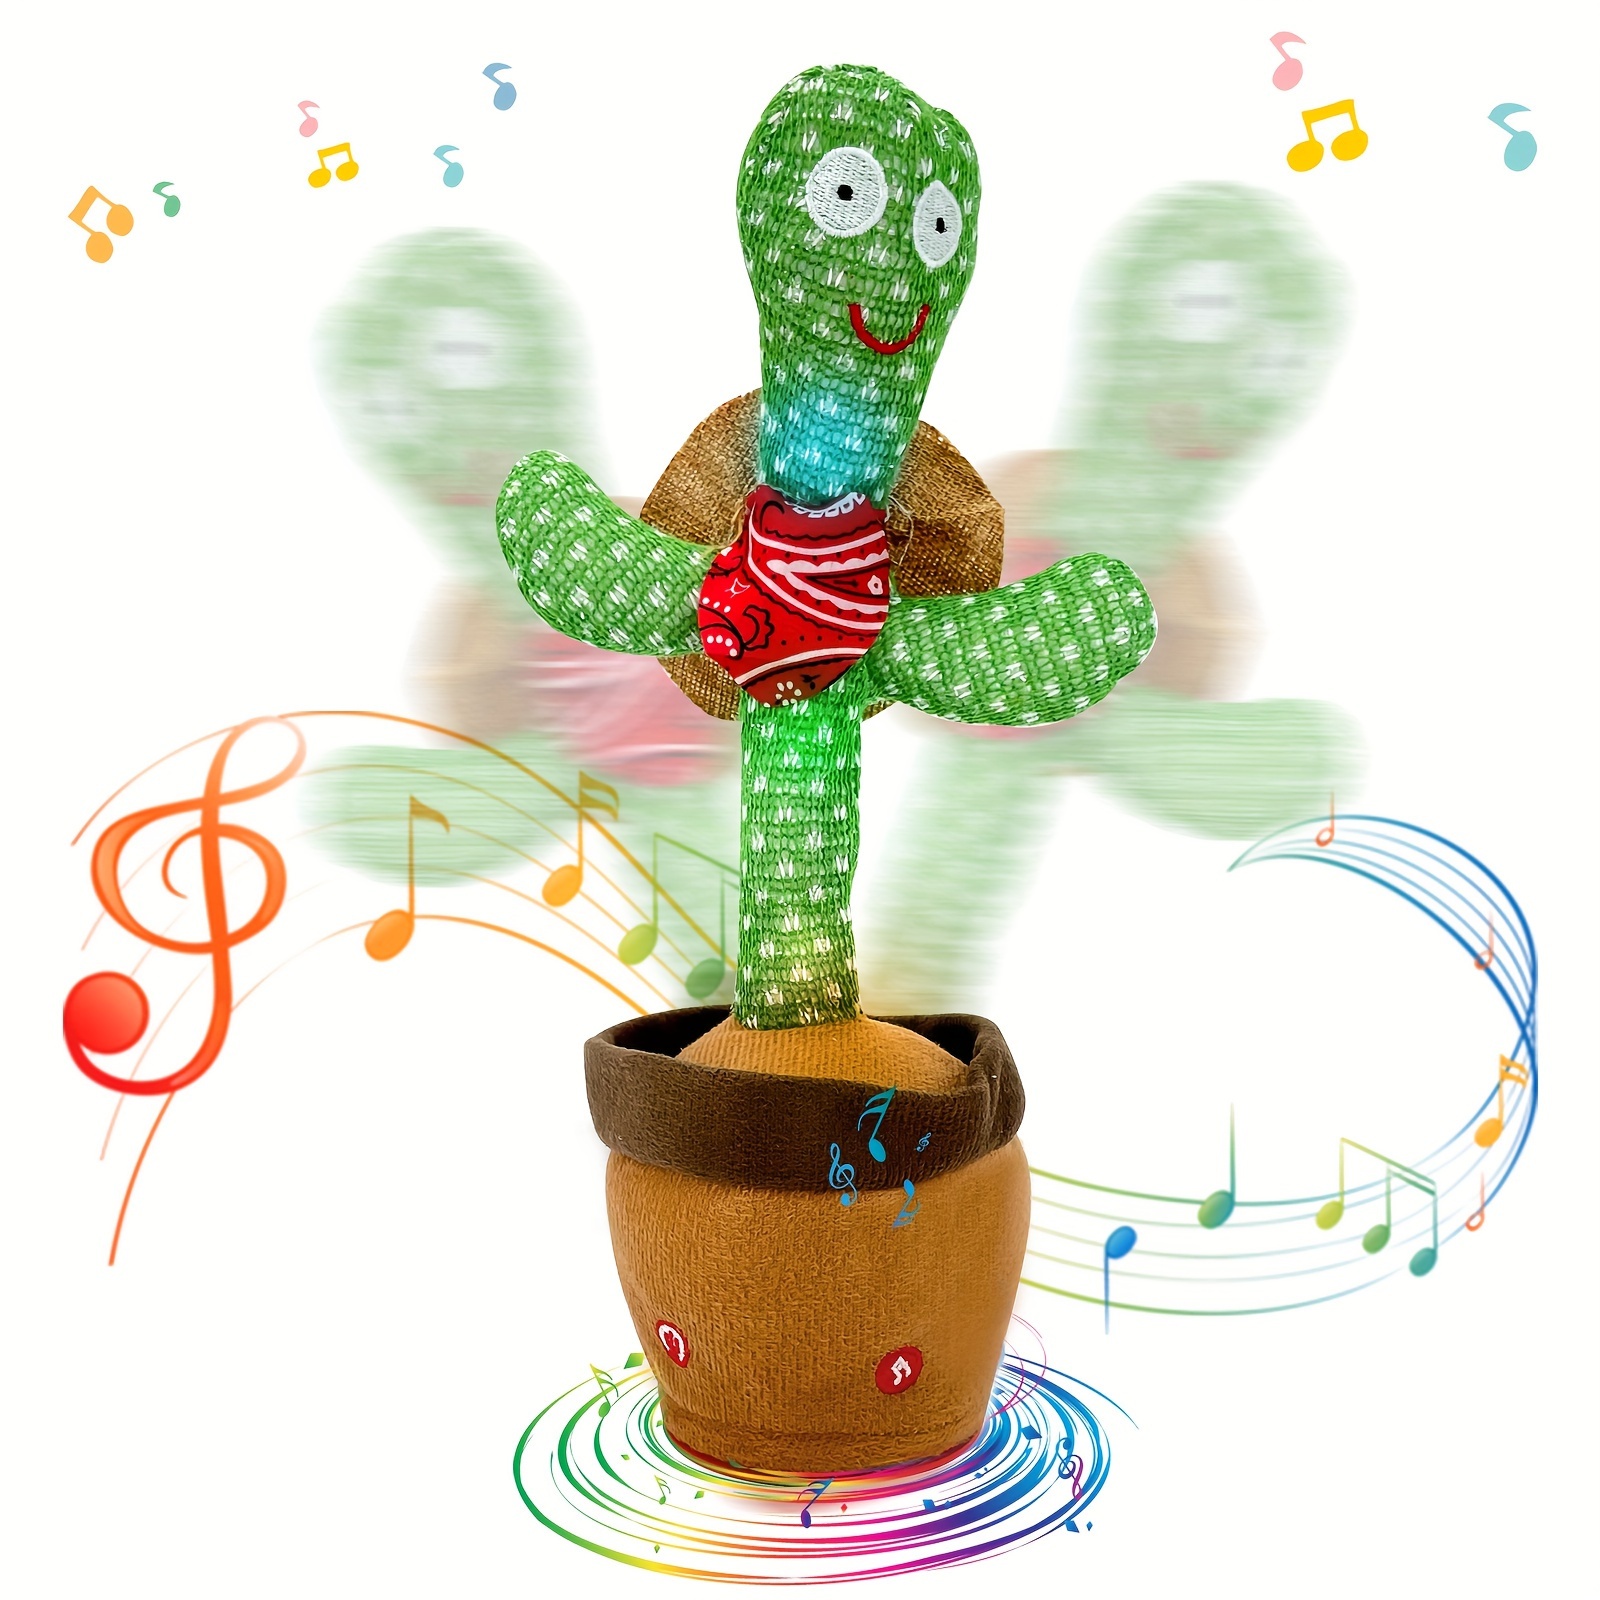 120 chansons dansant chantant imitant le cactus jouet perroquet